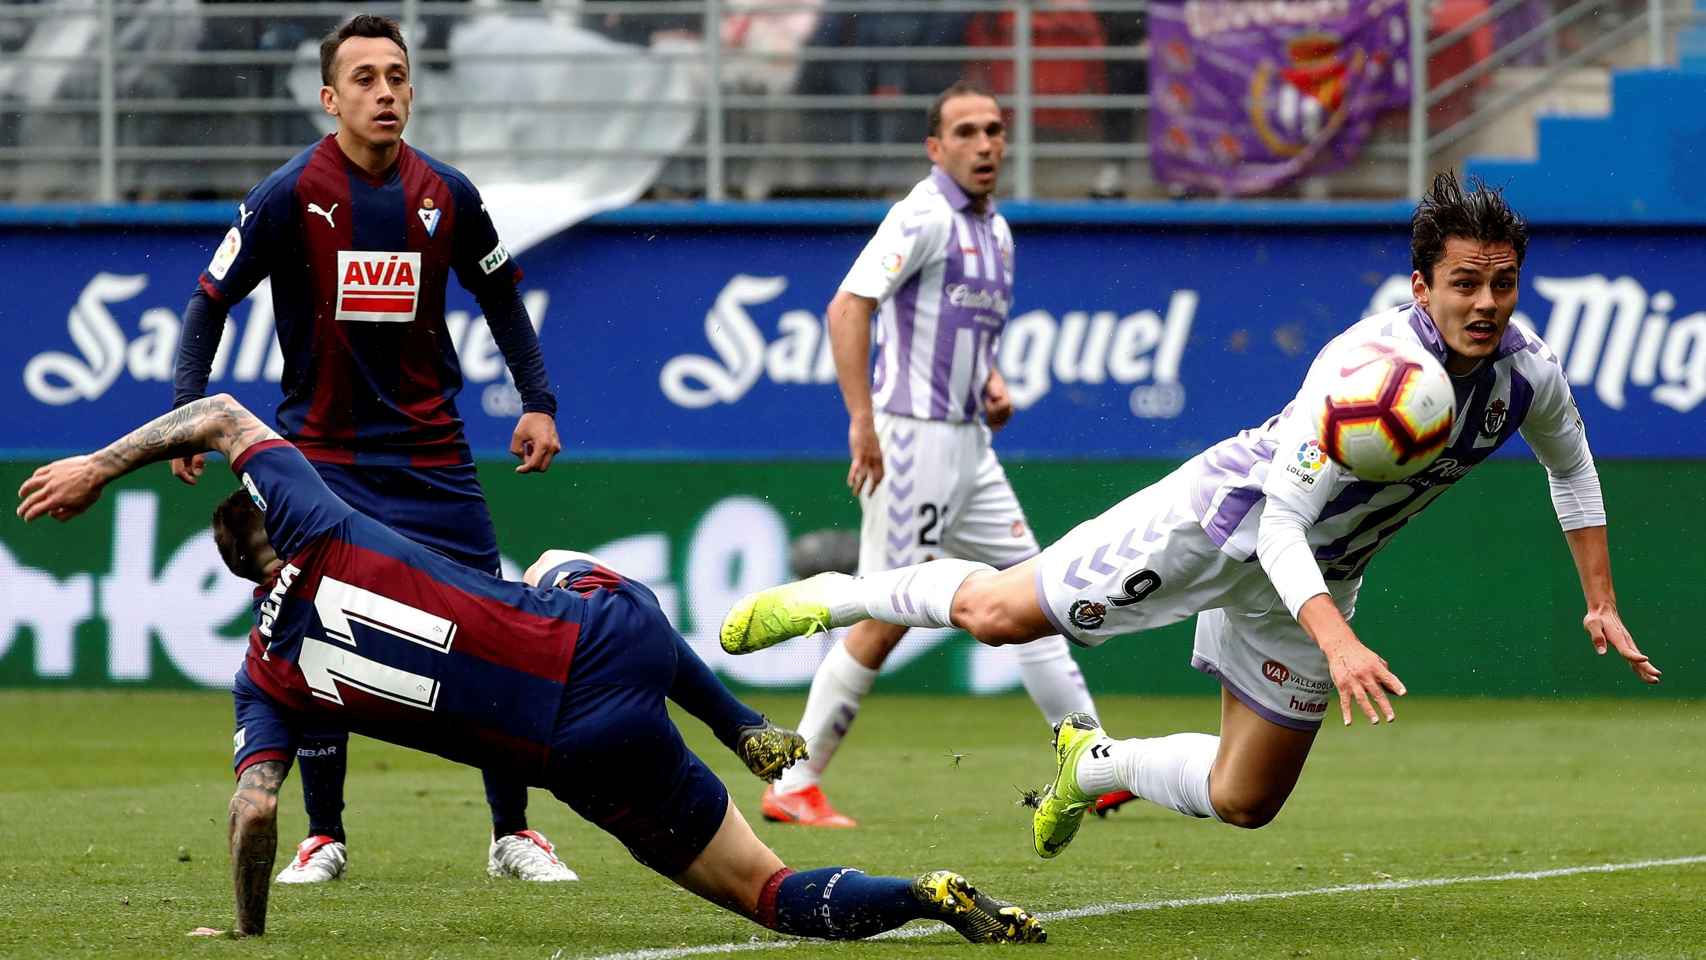 Rubén Peña lucha un balón con Unal en el Eibar - Valladolid de La Liga